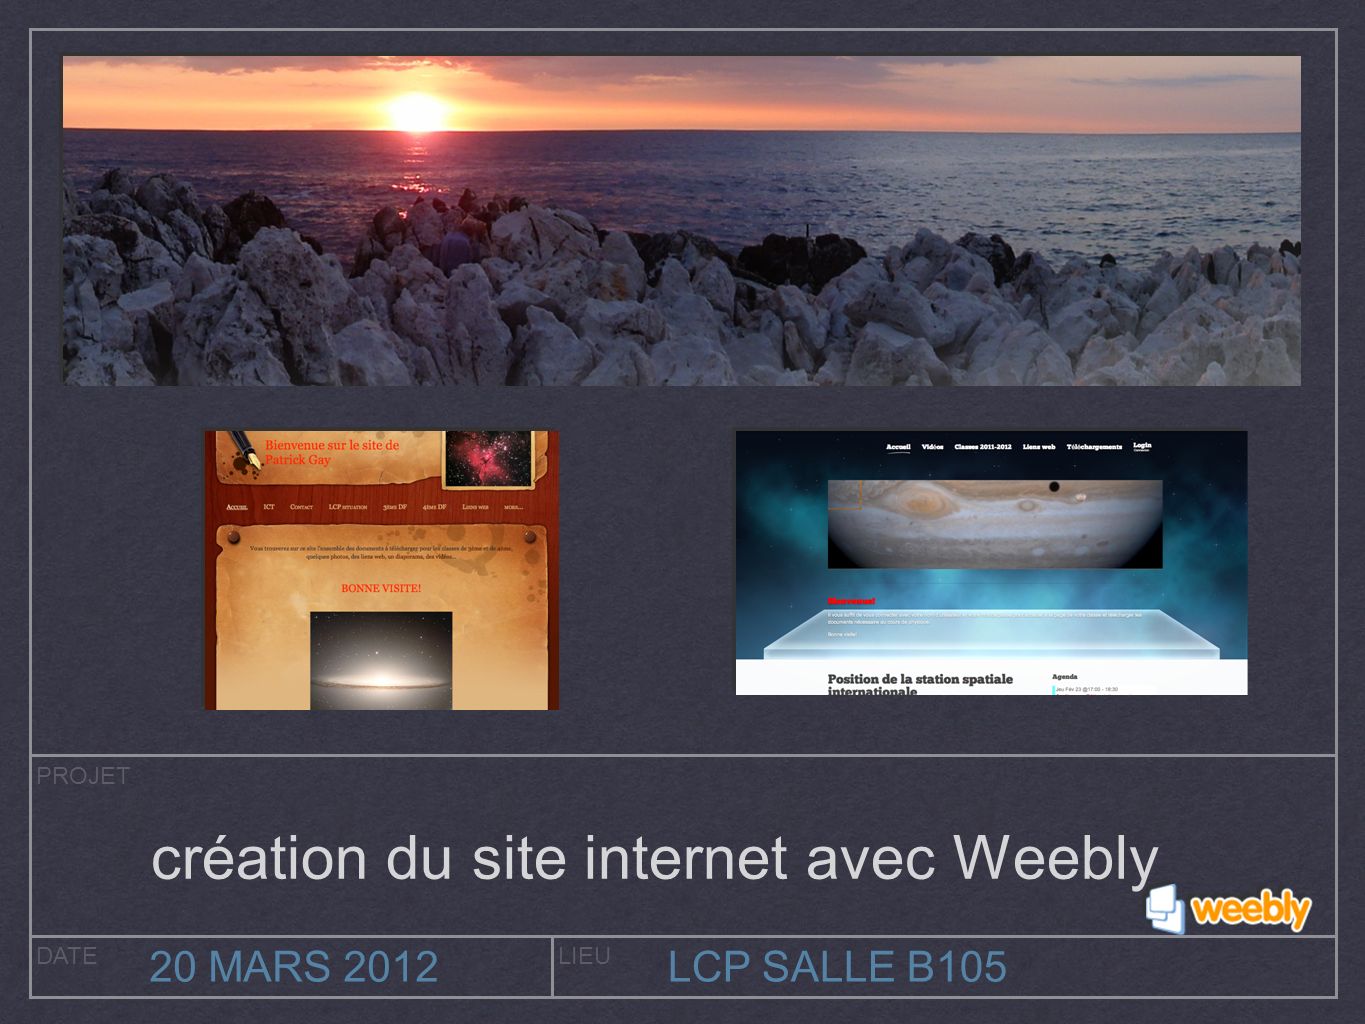 PROJET DATELIEU 20 MARS 2012LCP SALLE B105 création du site internet avec Weebly